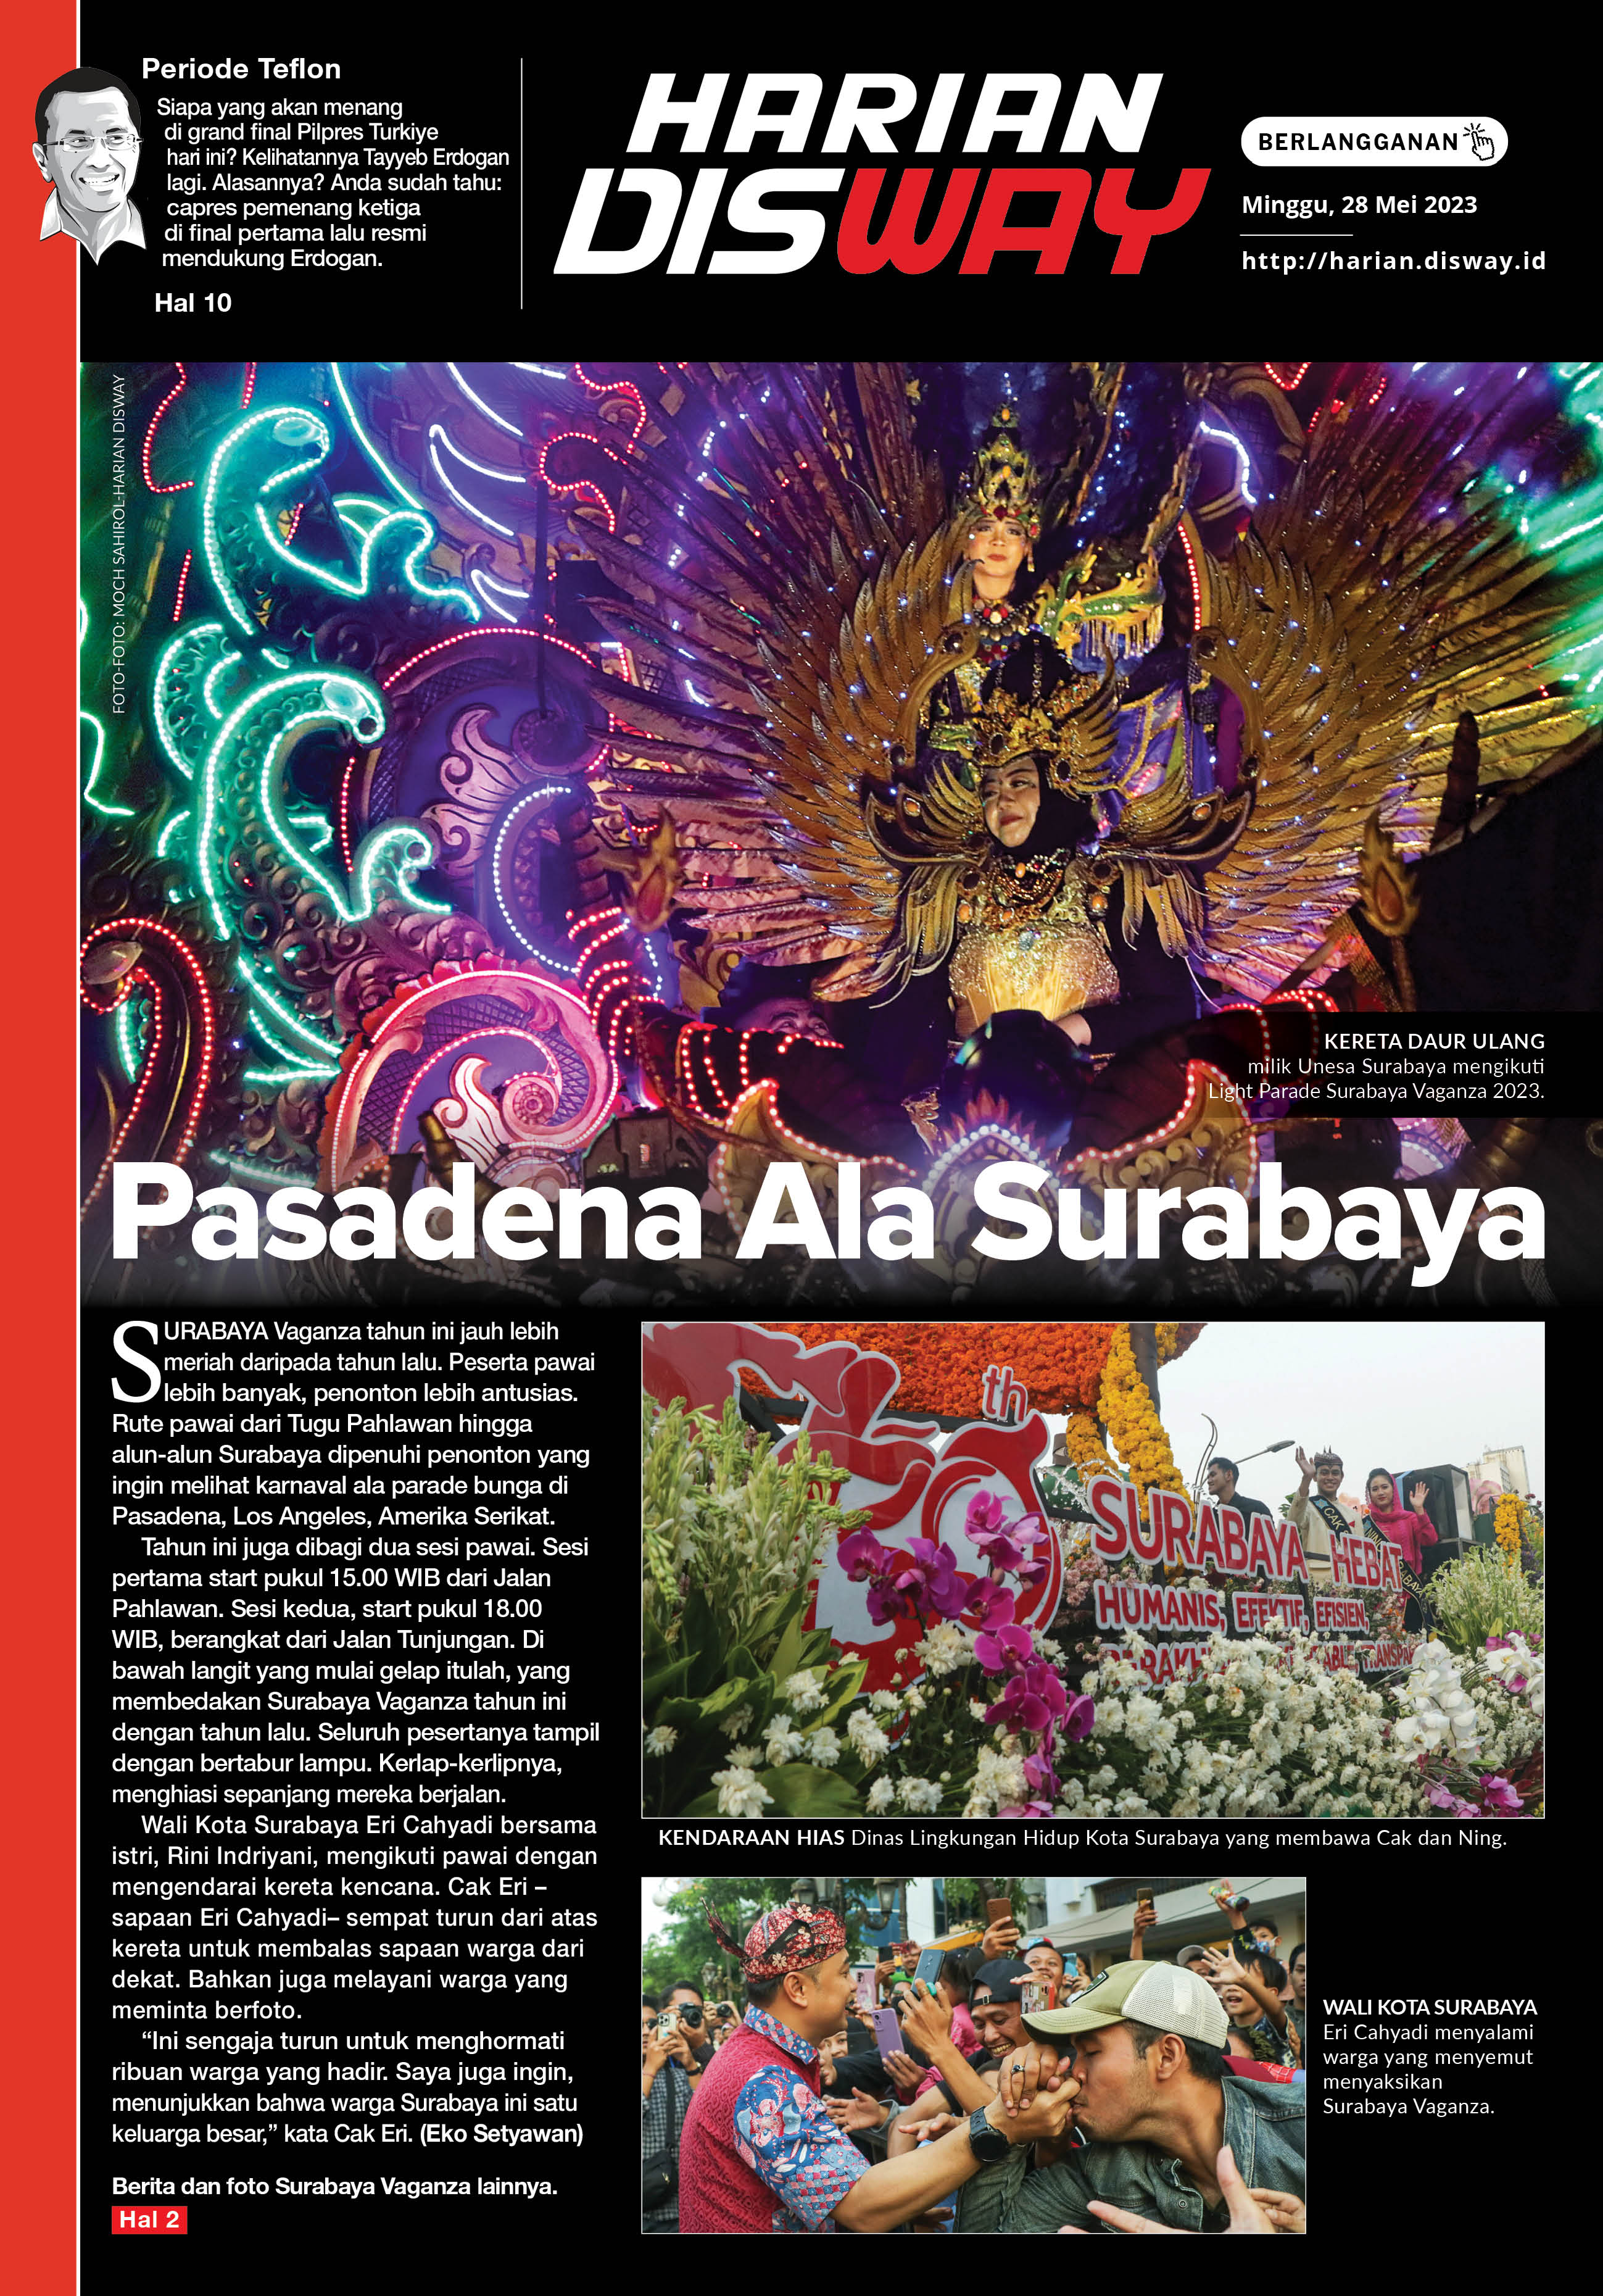 Pasadena Ala Surabaya